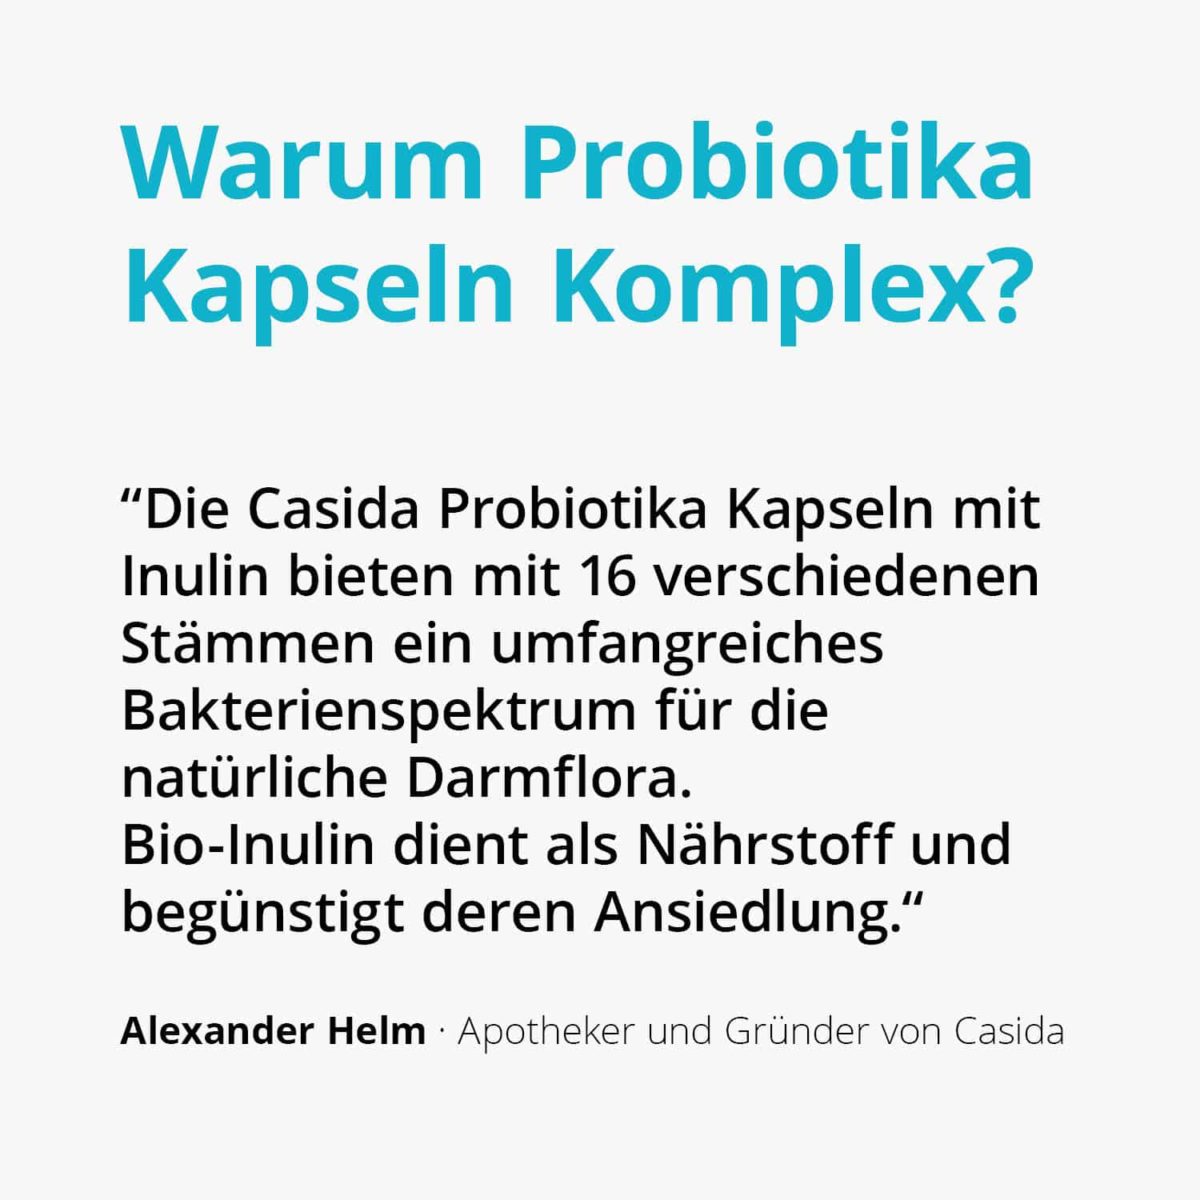 Probiotics complex capsules with inulin